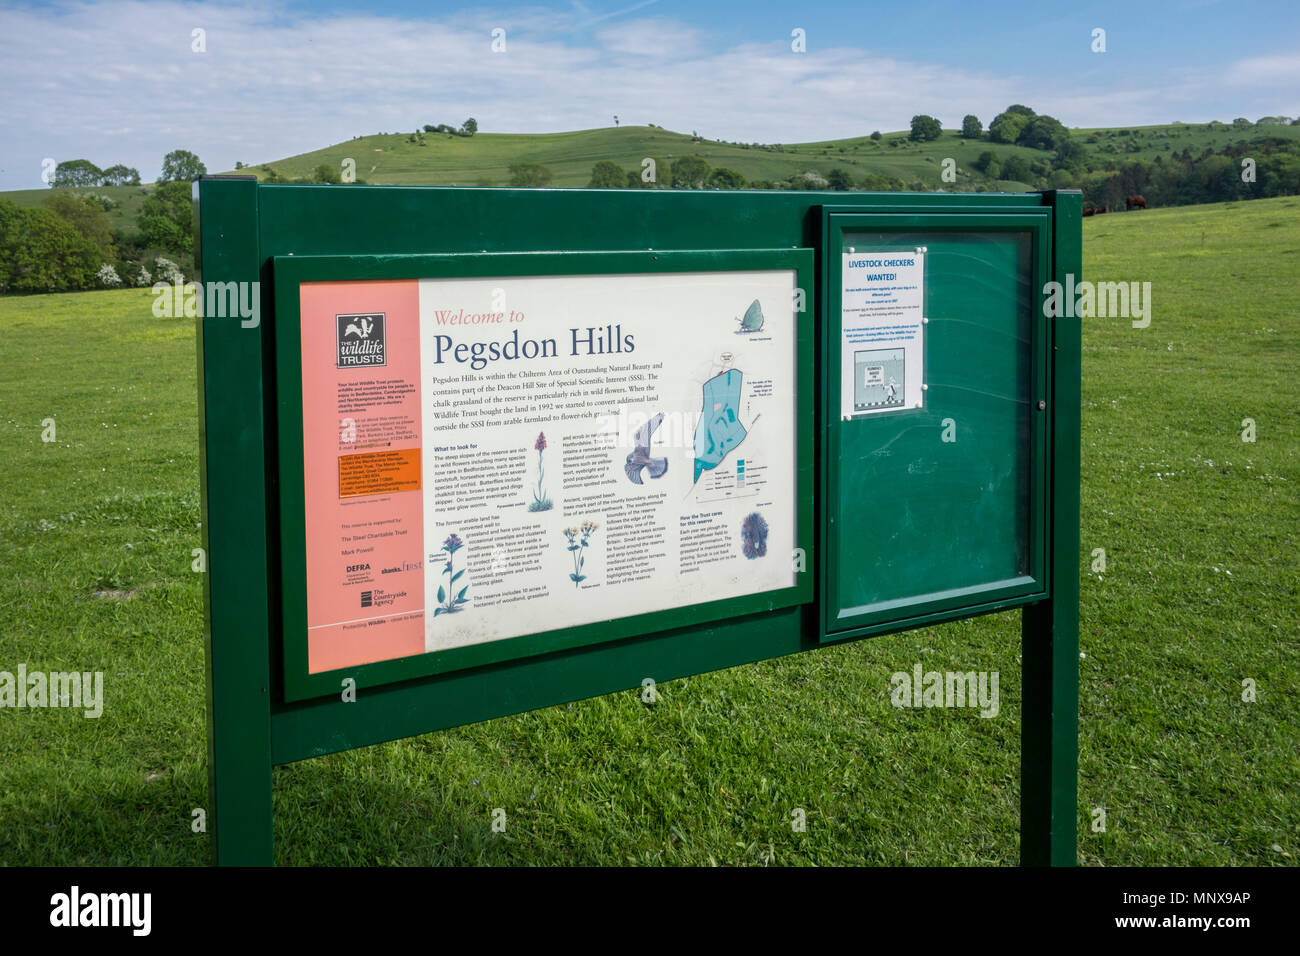 Pegsdon Hills et Hoo peu, réserve naturelle en Pegsdon dans le Bedfordshire, Chilterns Région d'une beauté naturelle Banque D'Images